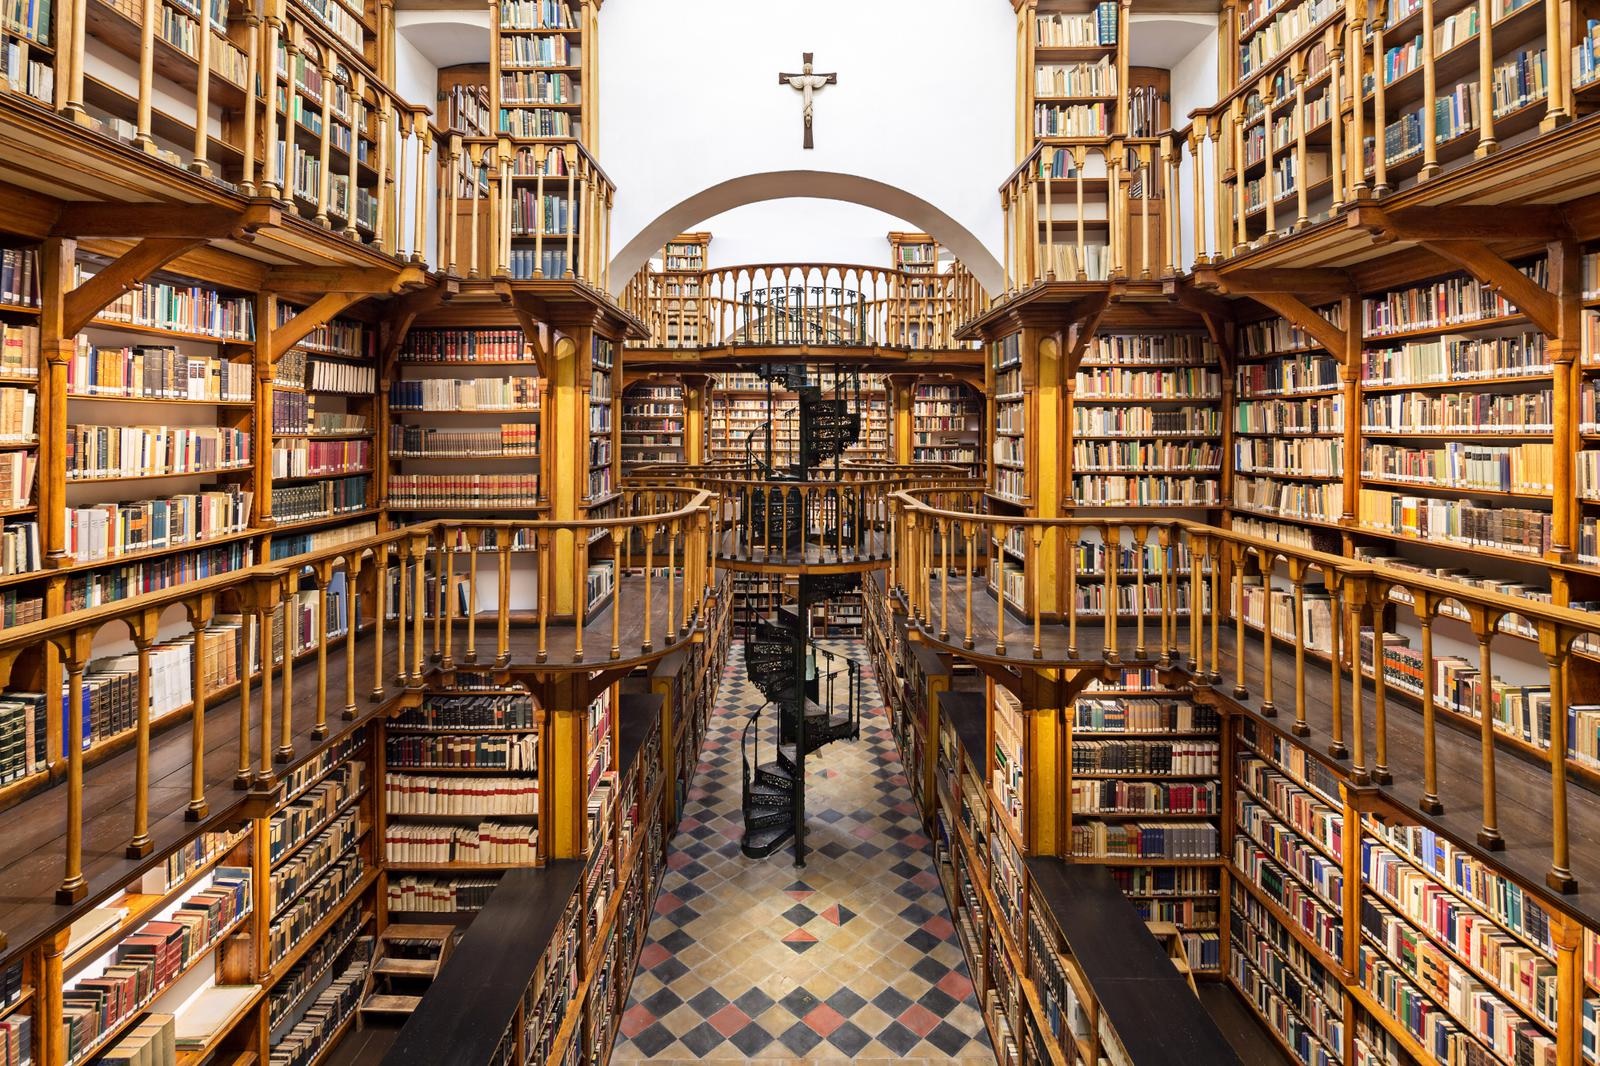 Maria Laach Abbey Library 01.jpg